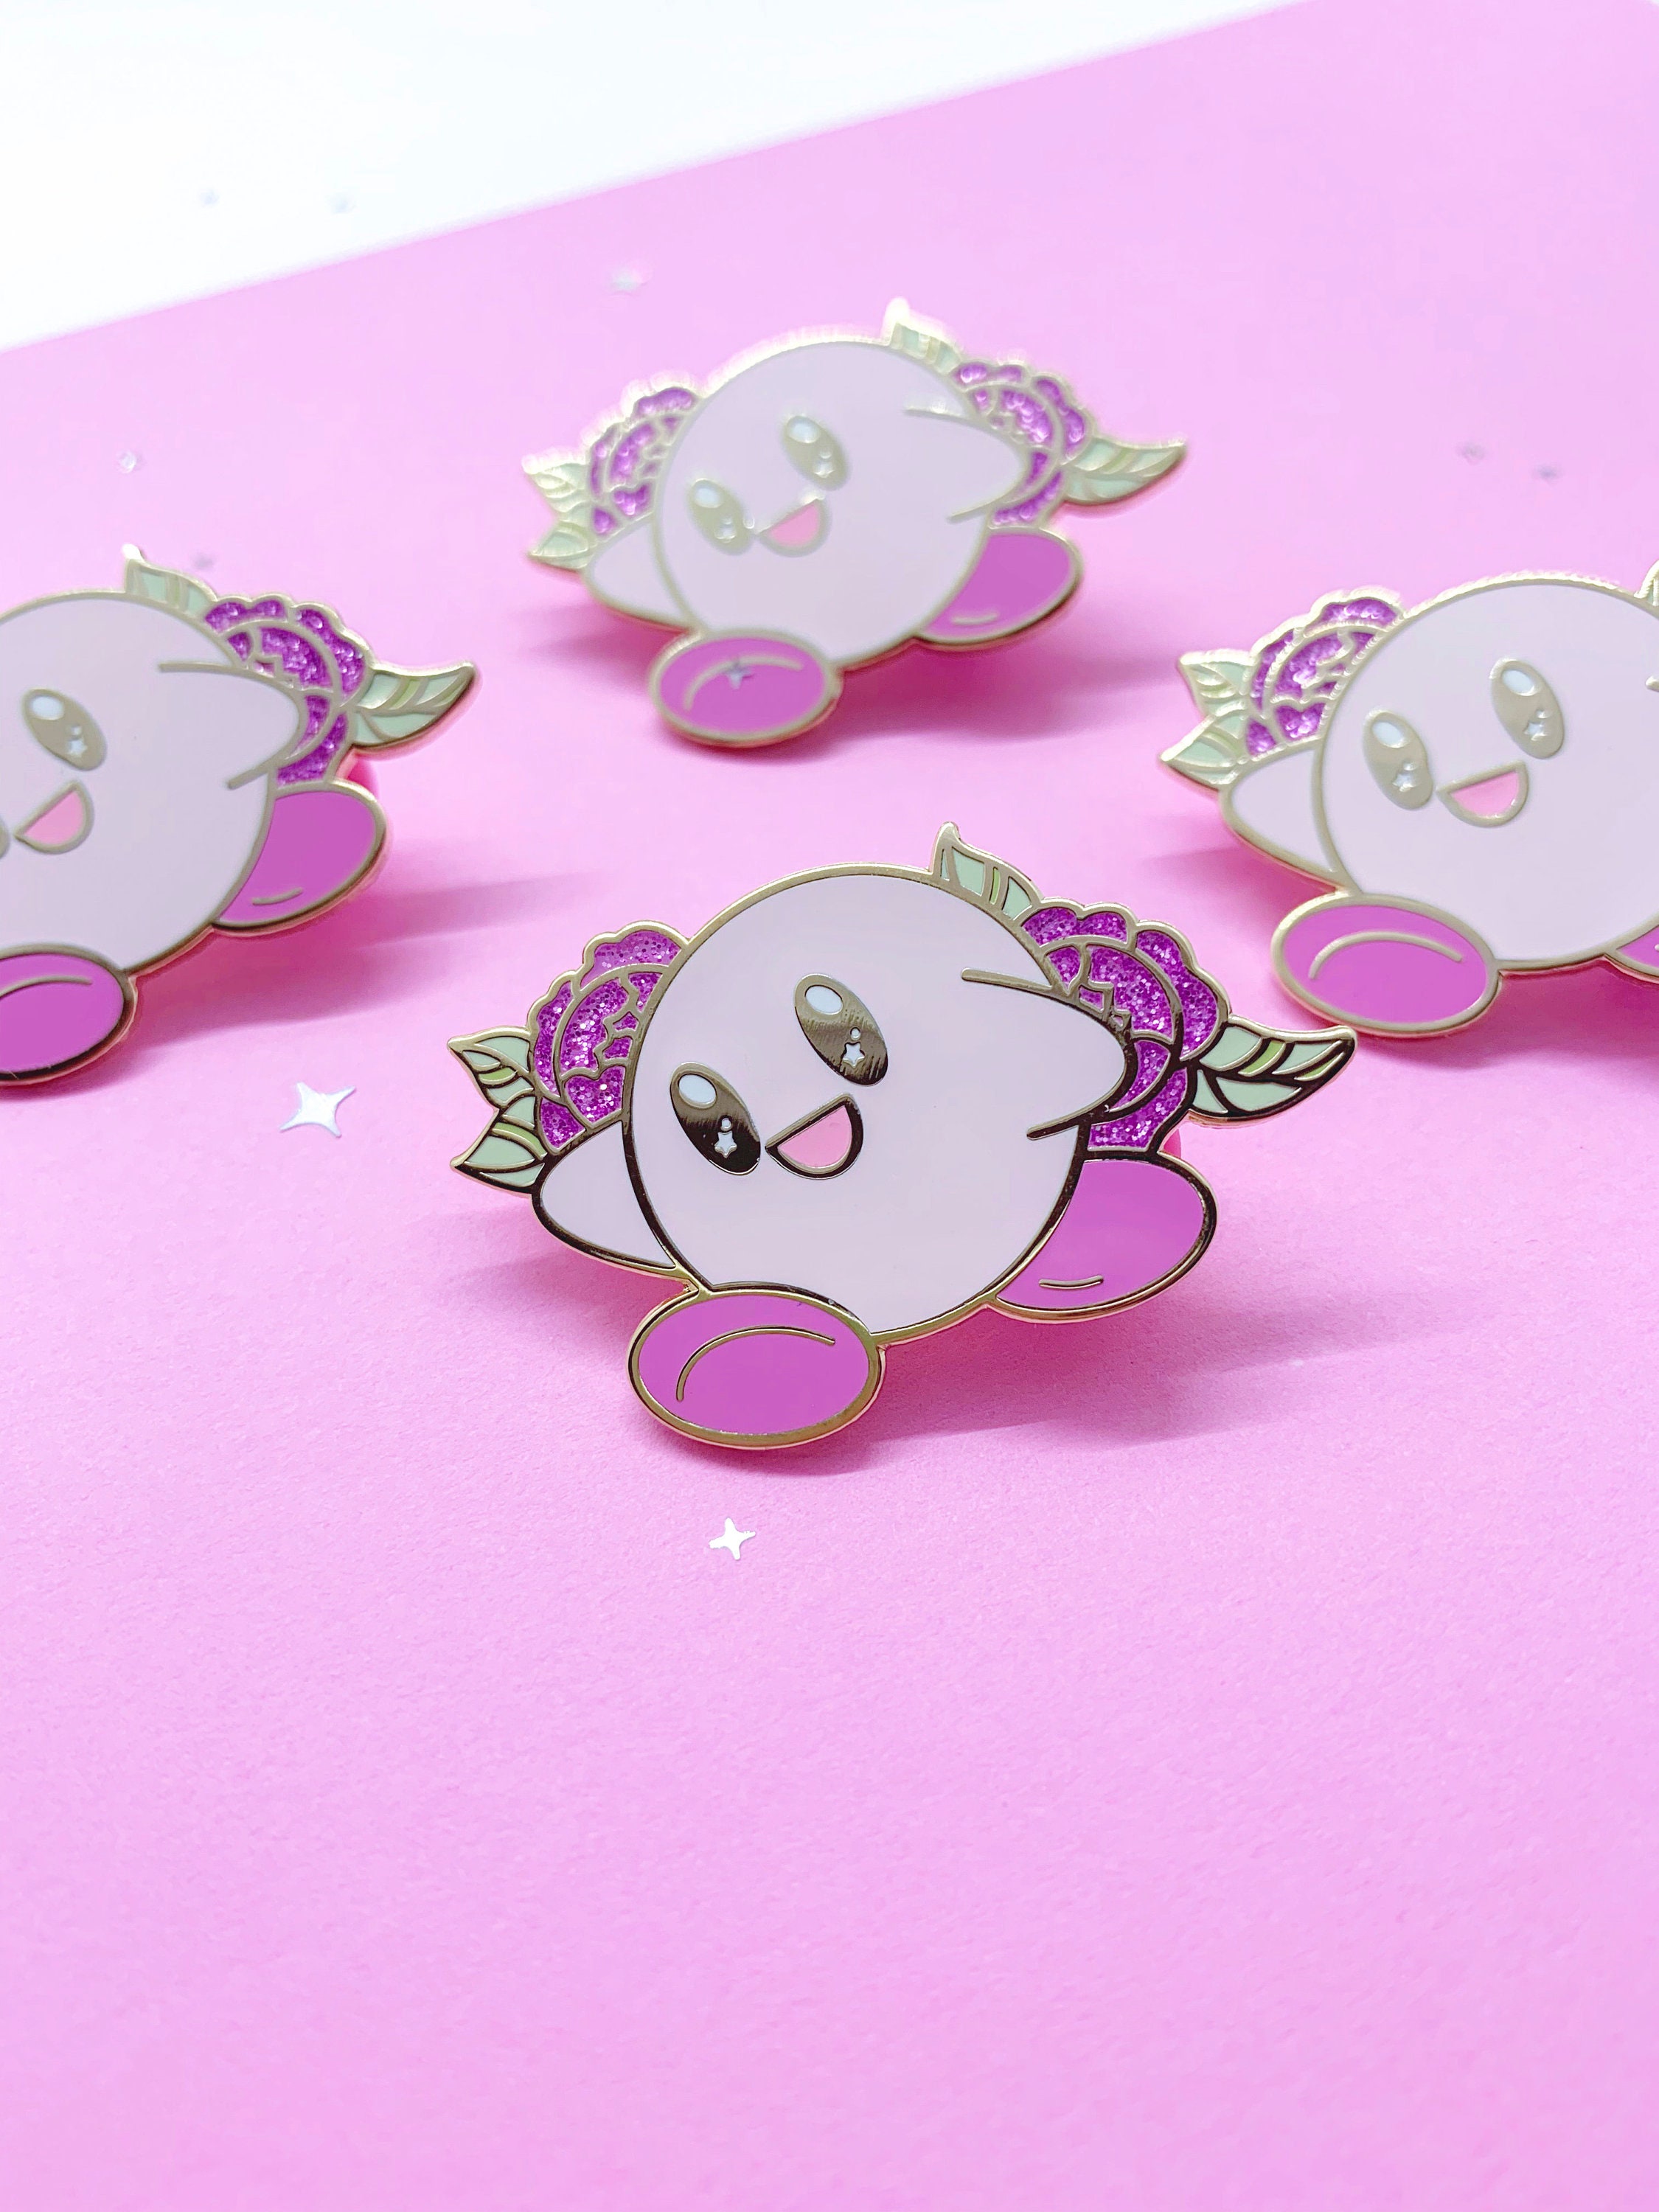 Kawaii Button Pins Cute Sanrio Pins Kirby Pins 